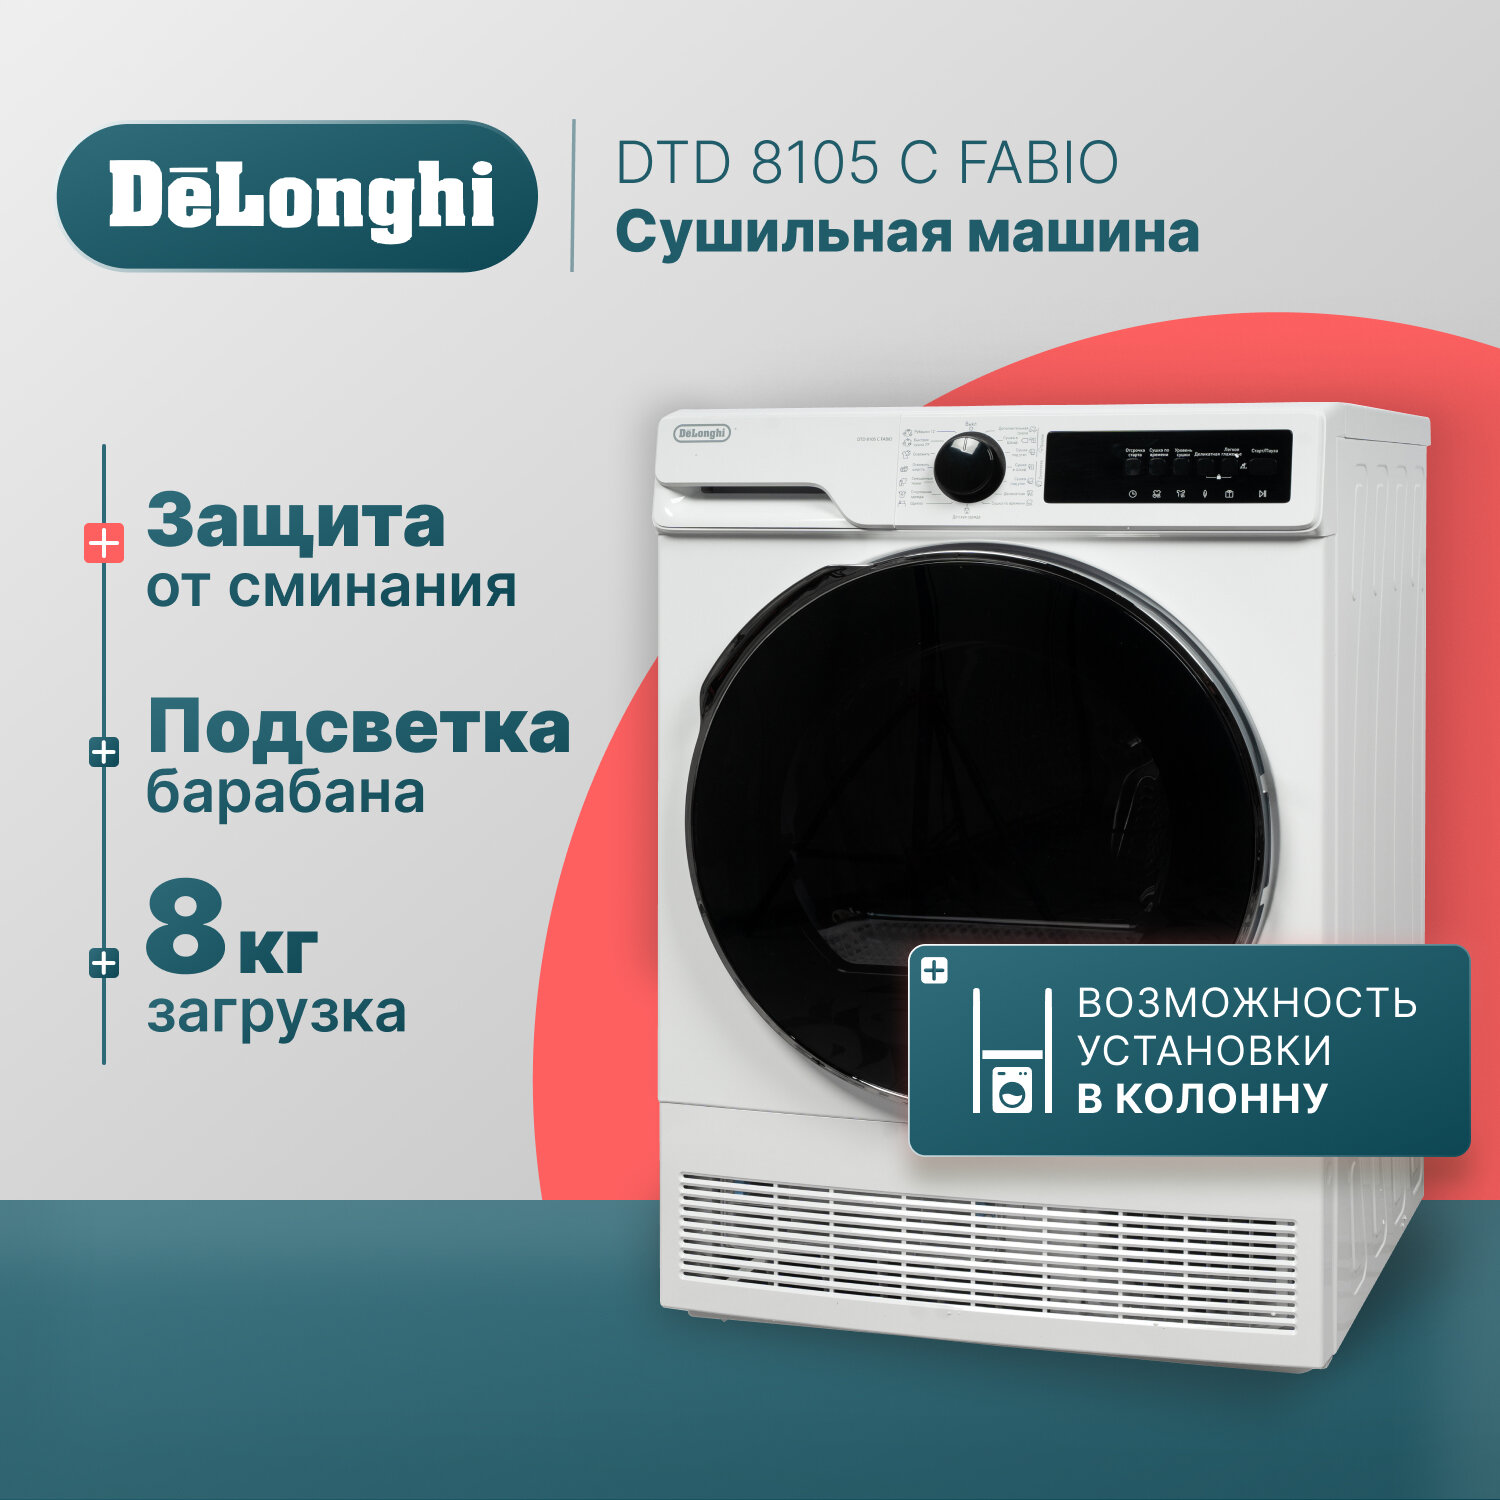 Сушильная машина DeLonghi DTD 8105 C FABIO отдельностоящая 8 кг белая 3 уровня сушки подсветка барабана